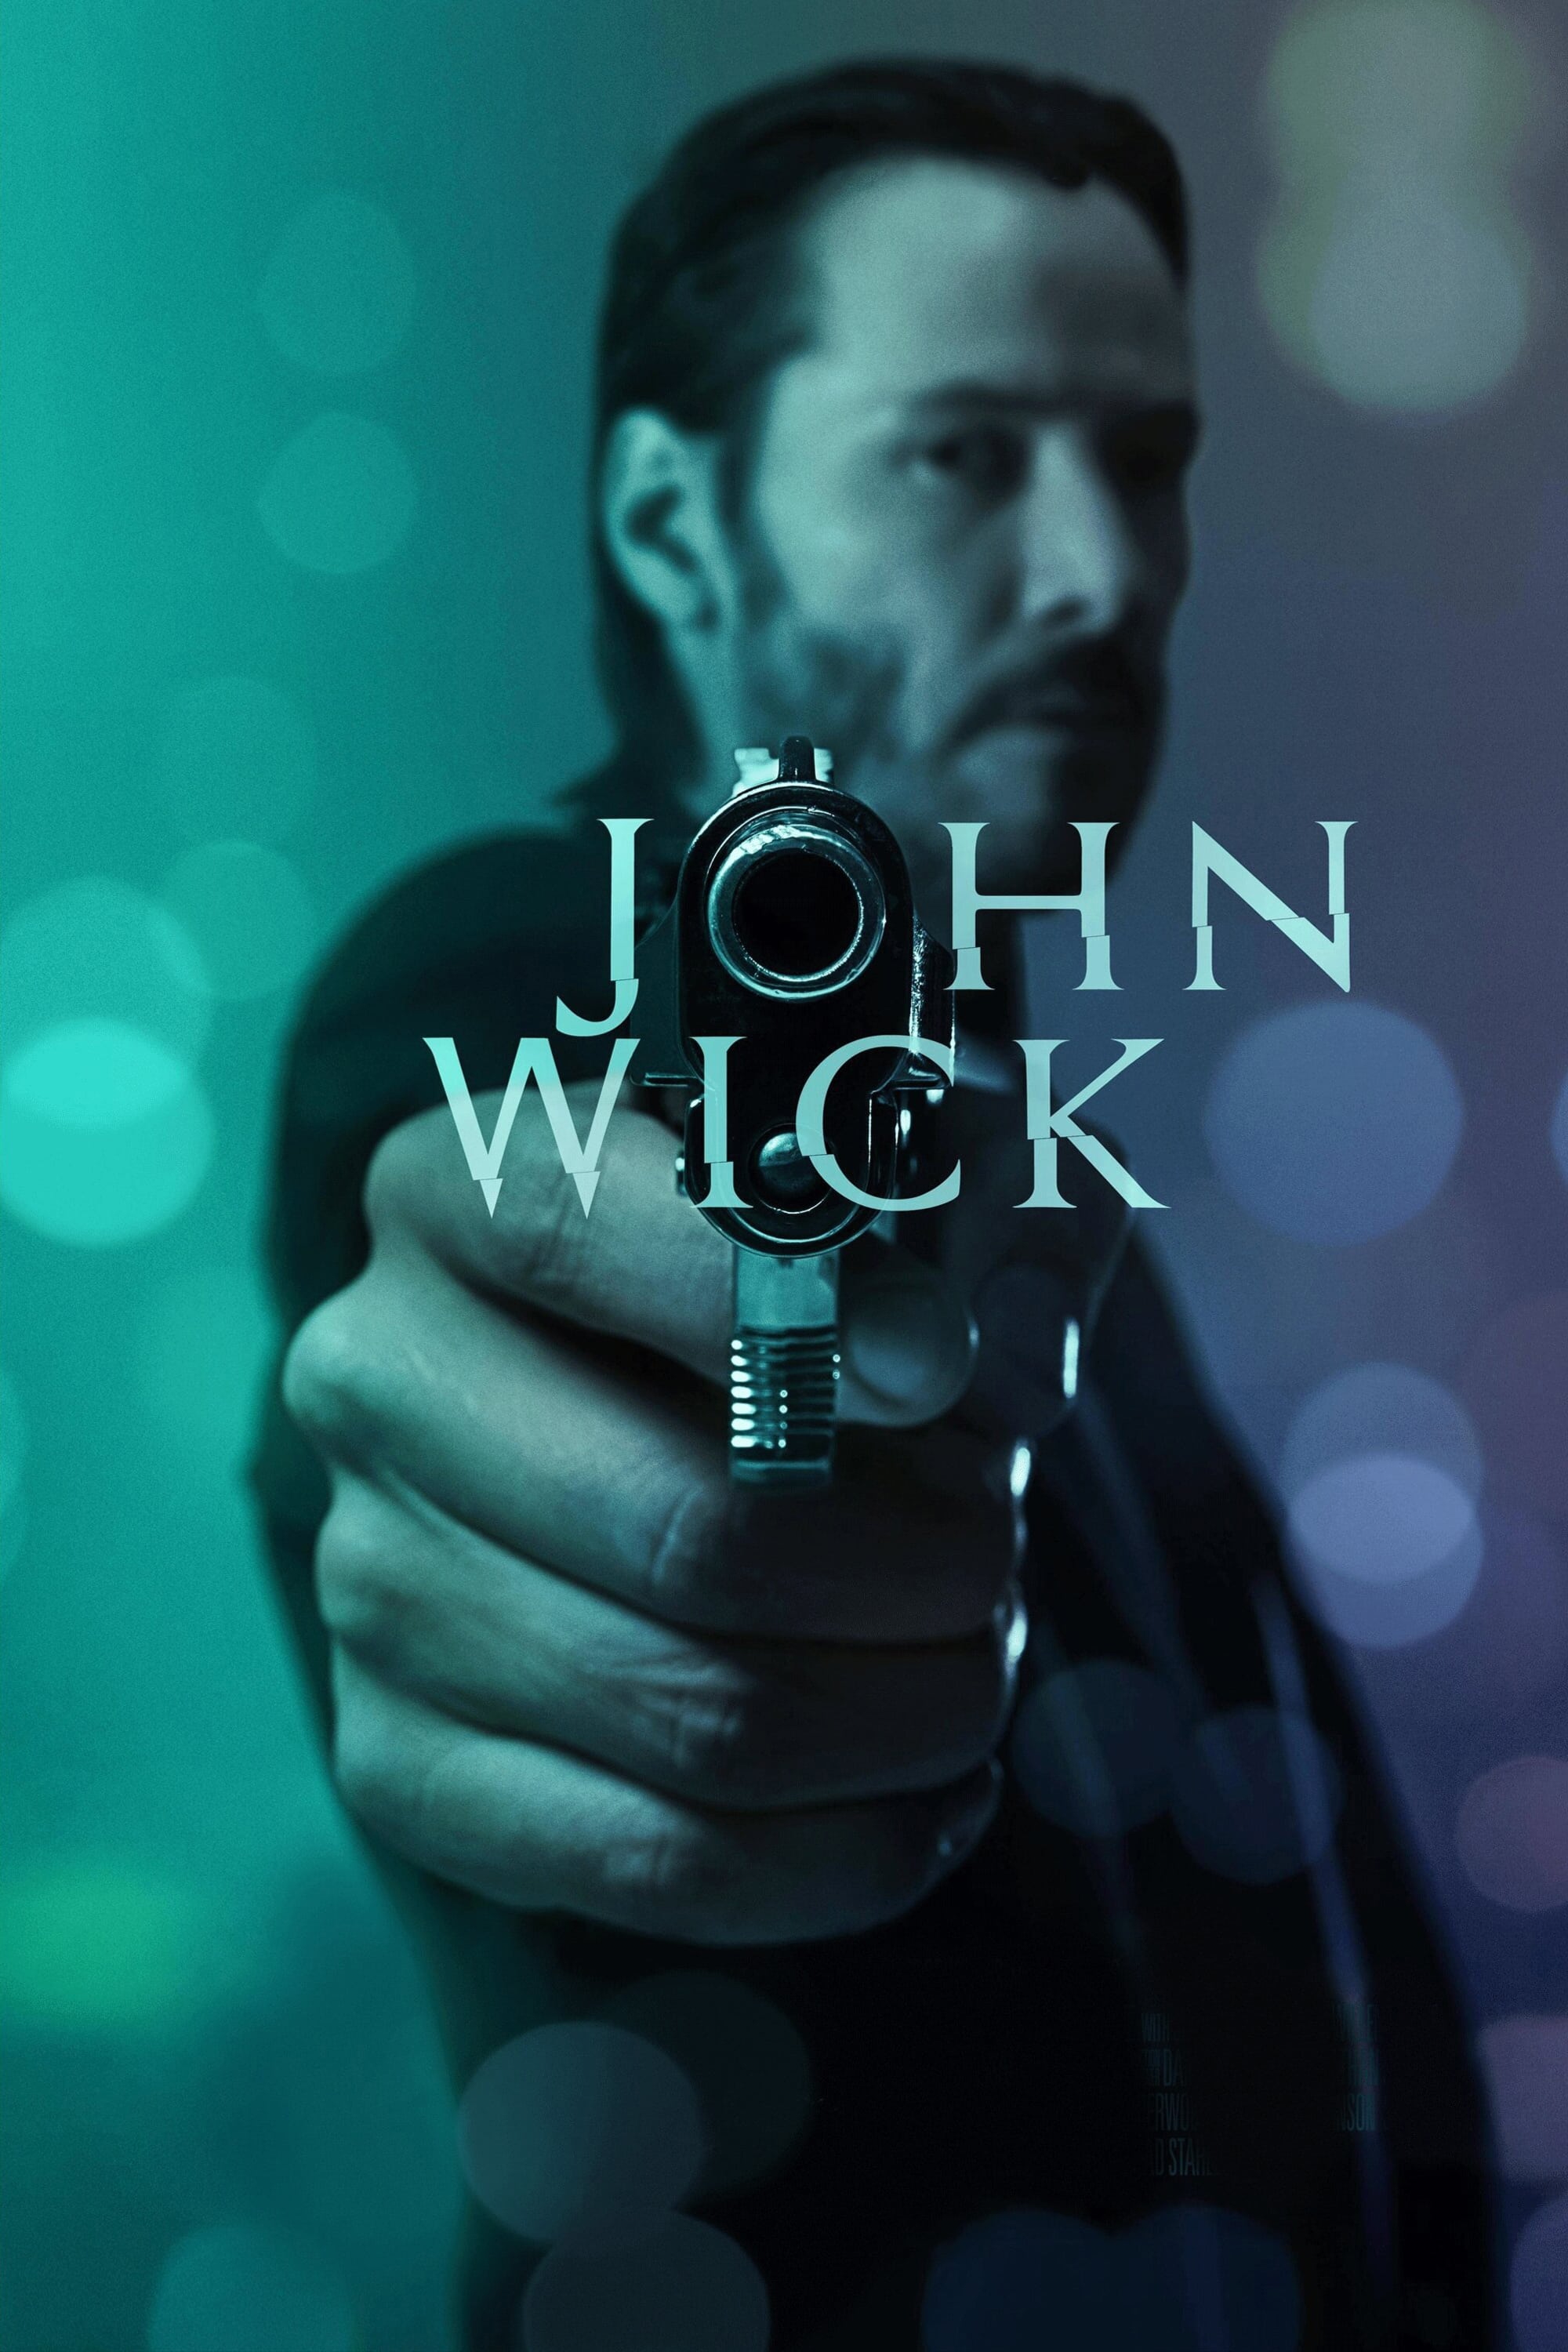 John Wick (Otro día para matar) (2014)